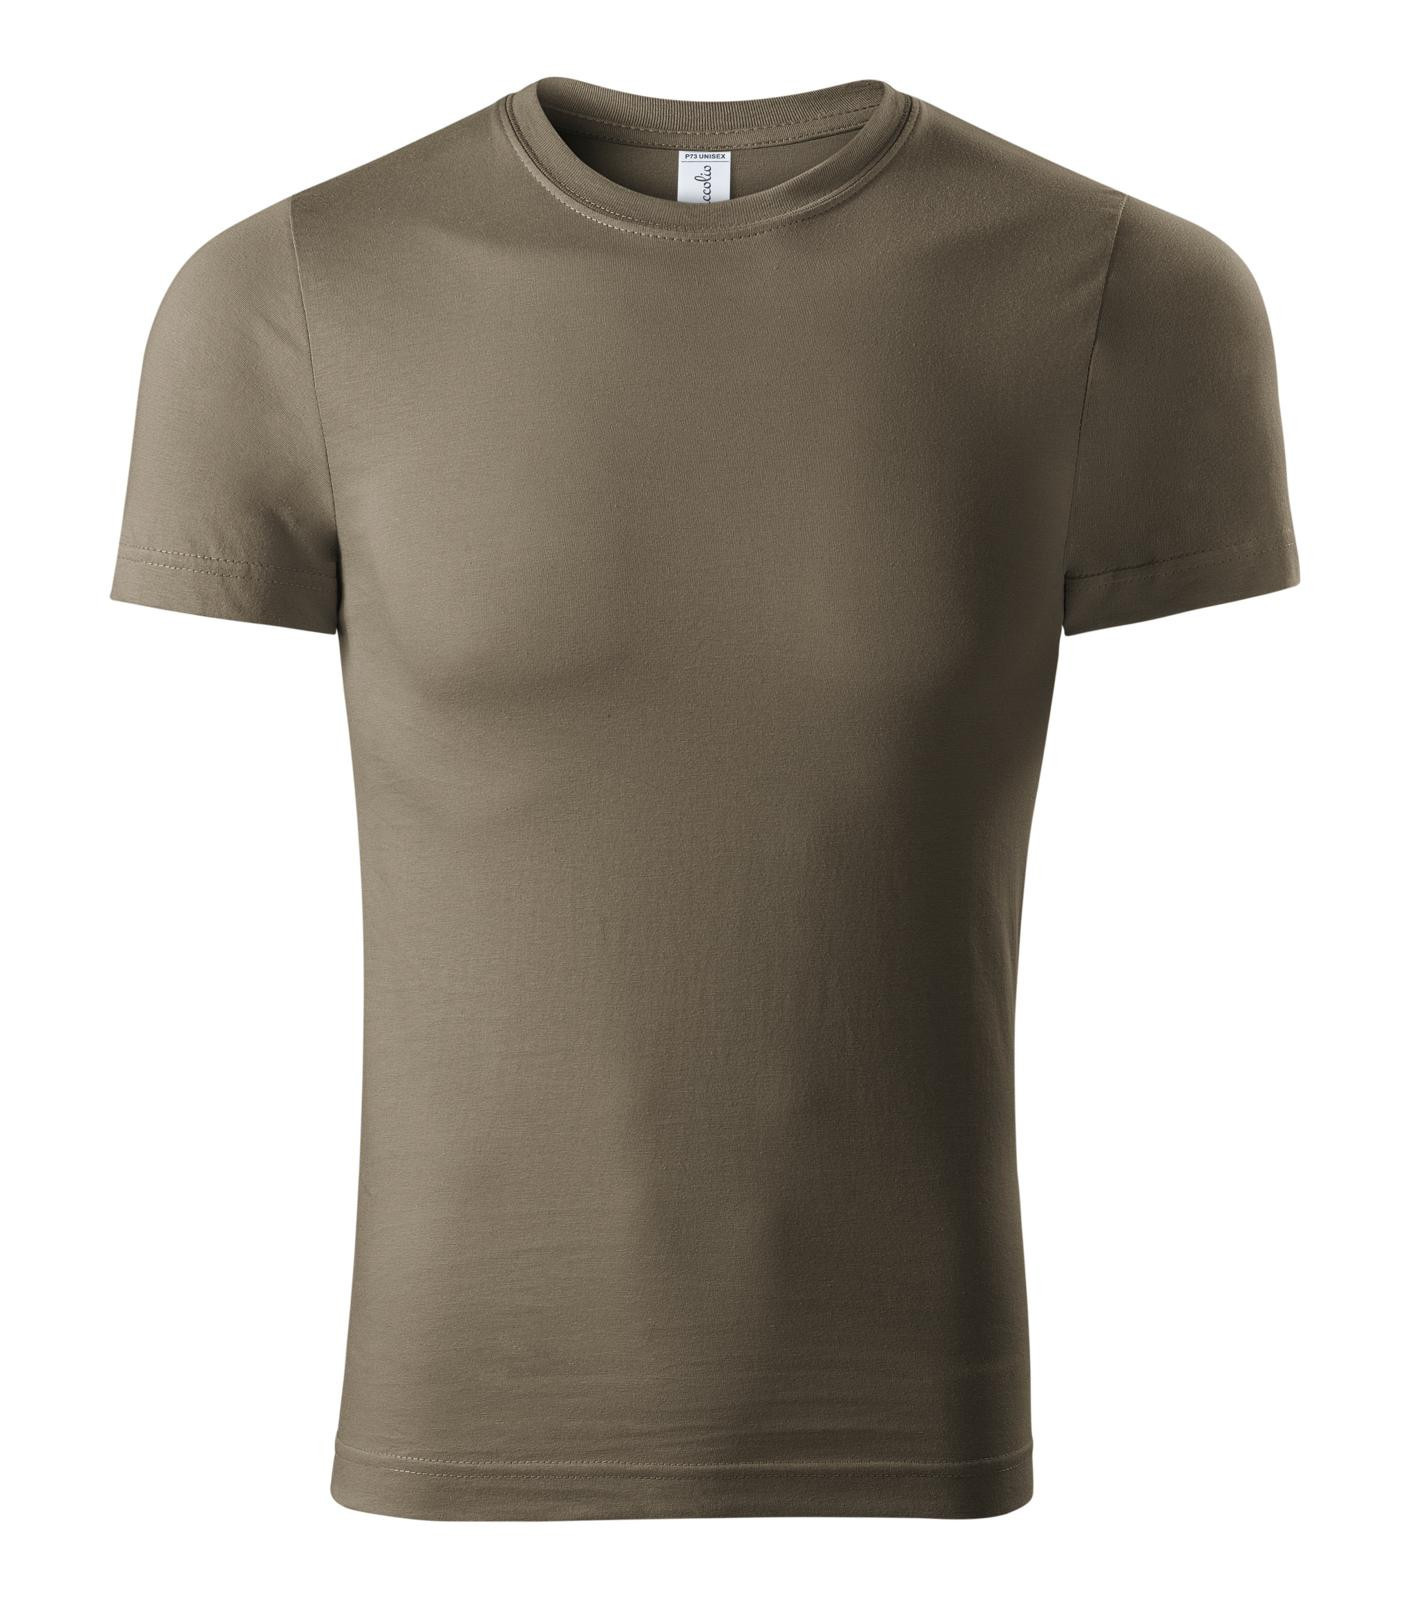 Unisex tričko Piccolio Paint P73 - veľkosť: XL, farba: army